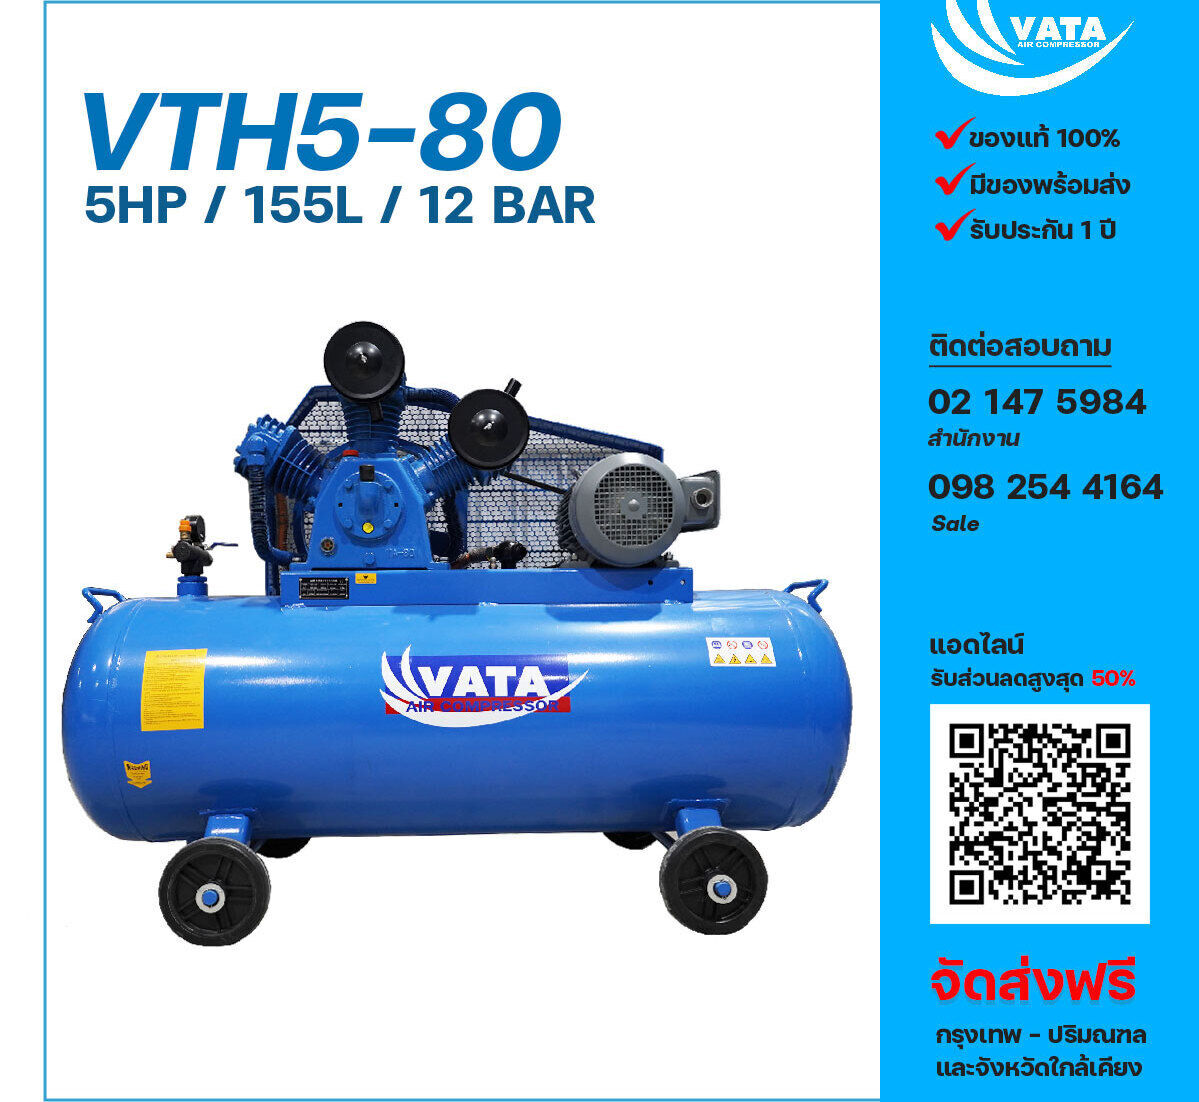 ปั๊มลมวาตะแรงดันสูง VATA Two-Stage VTH5-80 380V ปั๊มลมลูกสูบ ขนาด 3 สูบ 5 แรงม้า 155 ลิตร VATA พร้อมมอเตอร์ ไฟ 380V ส่งฟรี กรุงเทพฯ-ปริมณฑล รับประกัน 1 ปี
